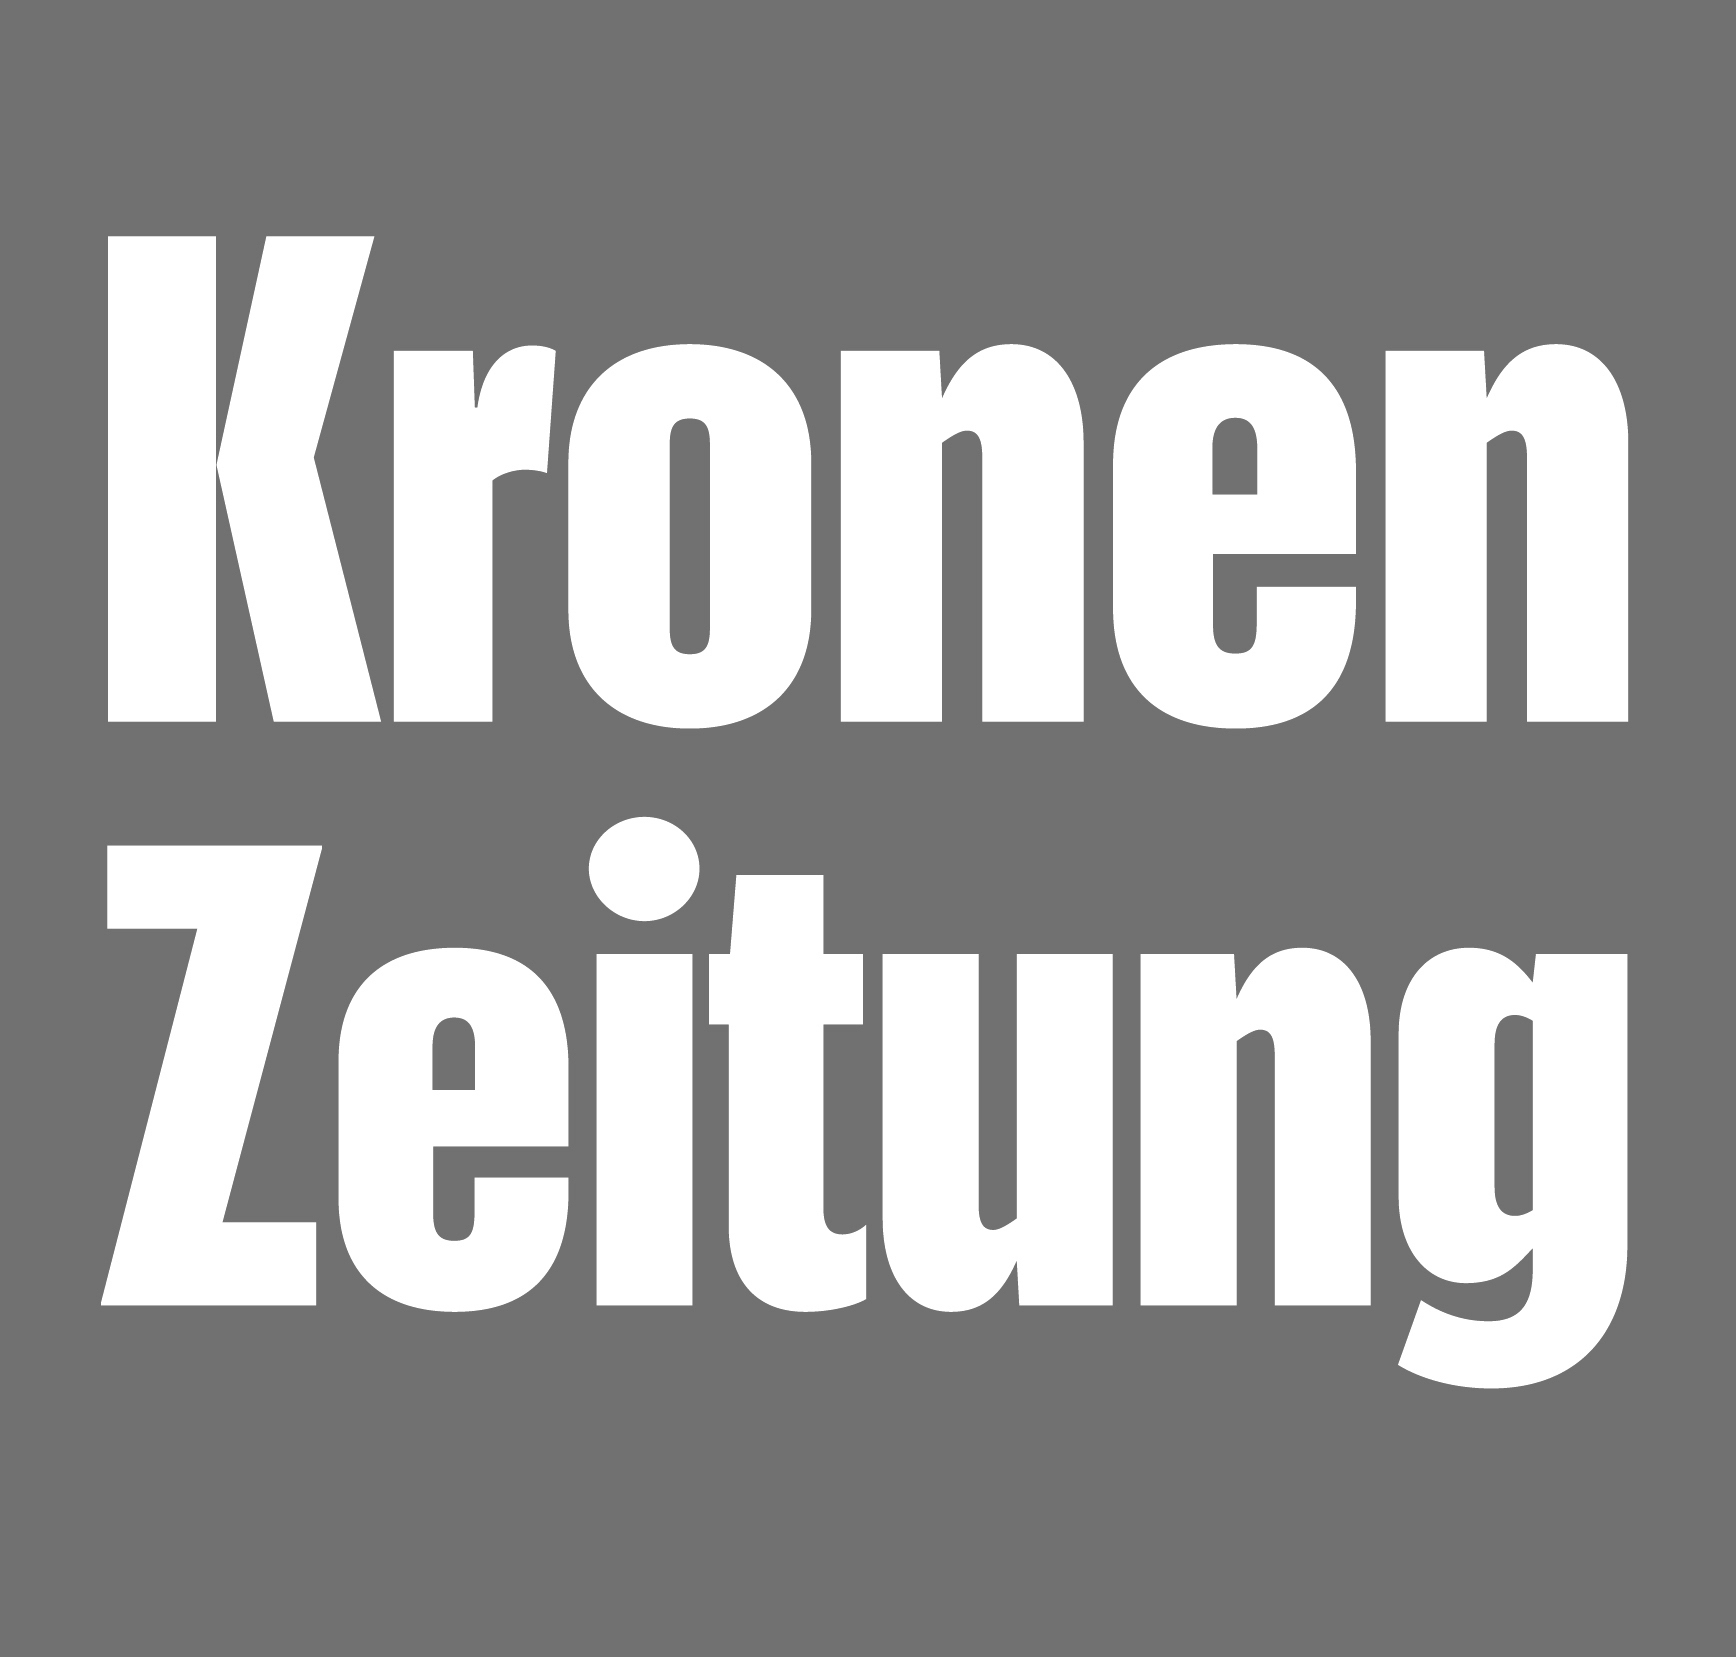 Kronen Zeitung Logo sw